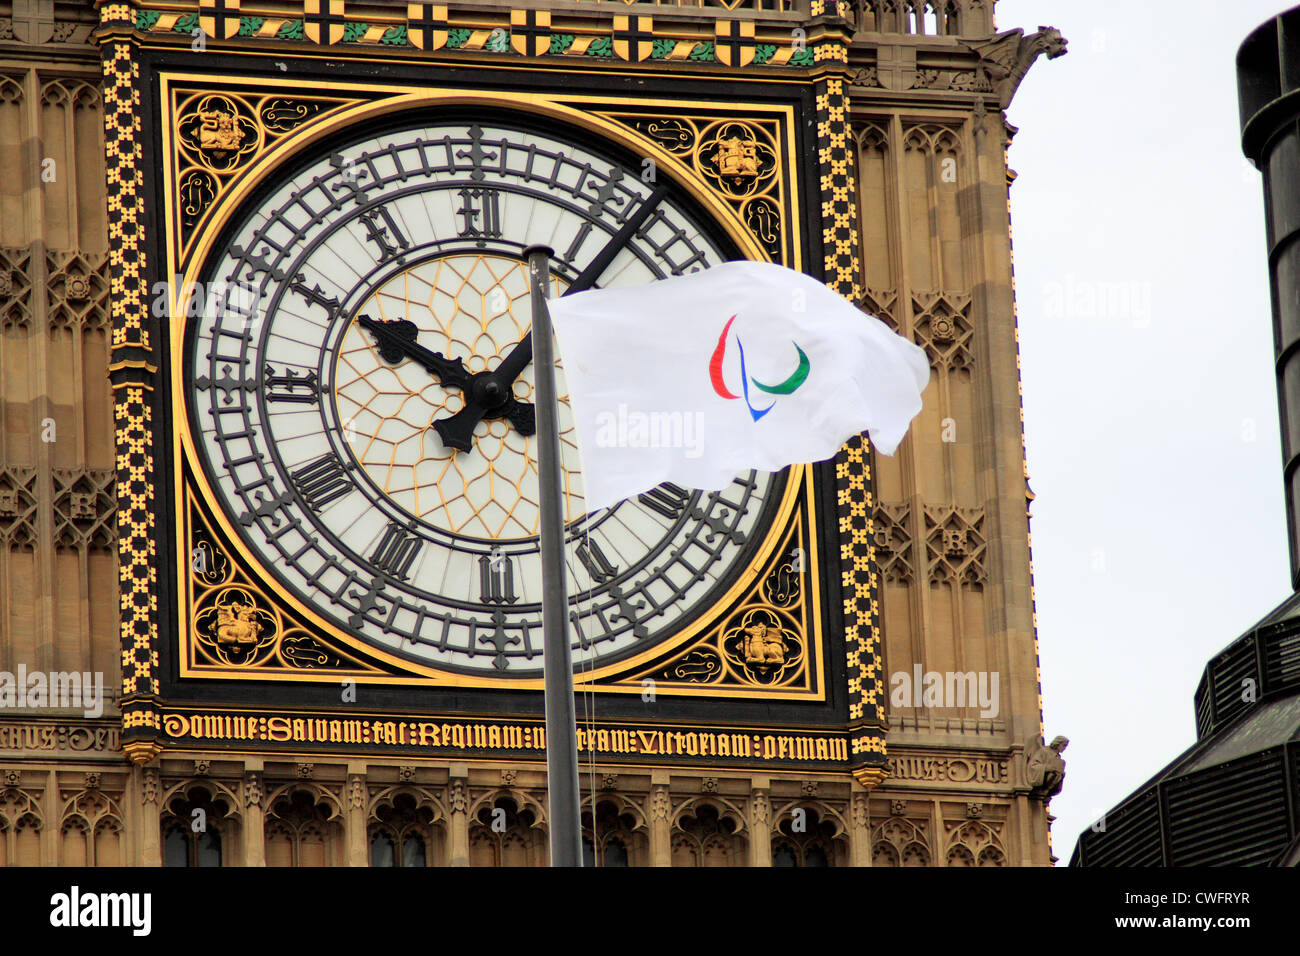 Londra 2012 Bandiera Paralimpica e Big Ben orologio Foto Stock